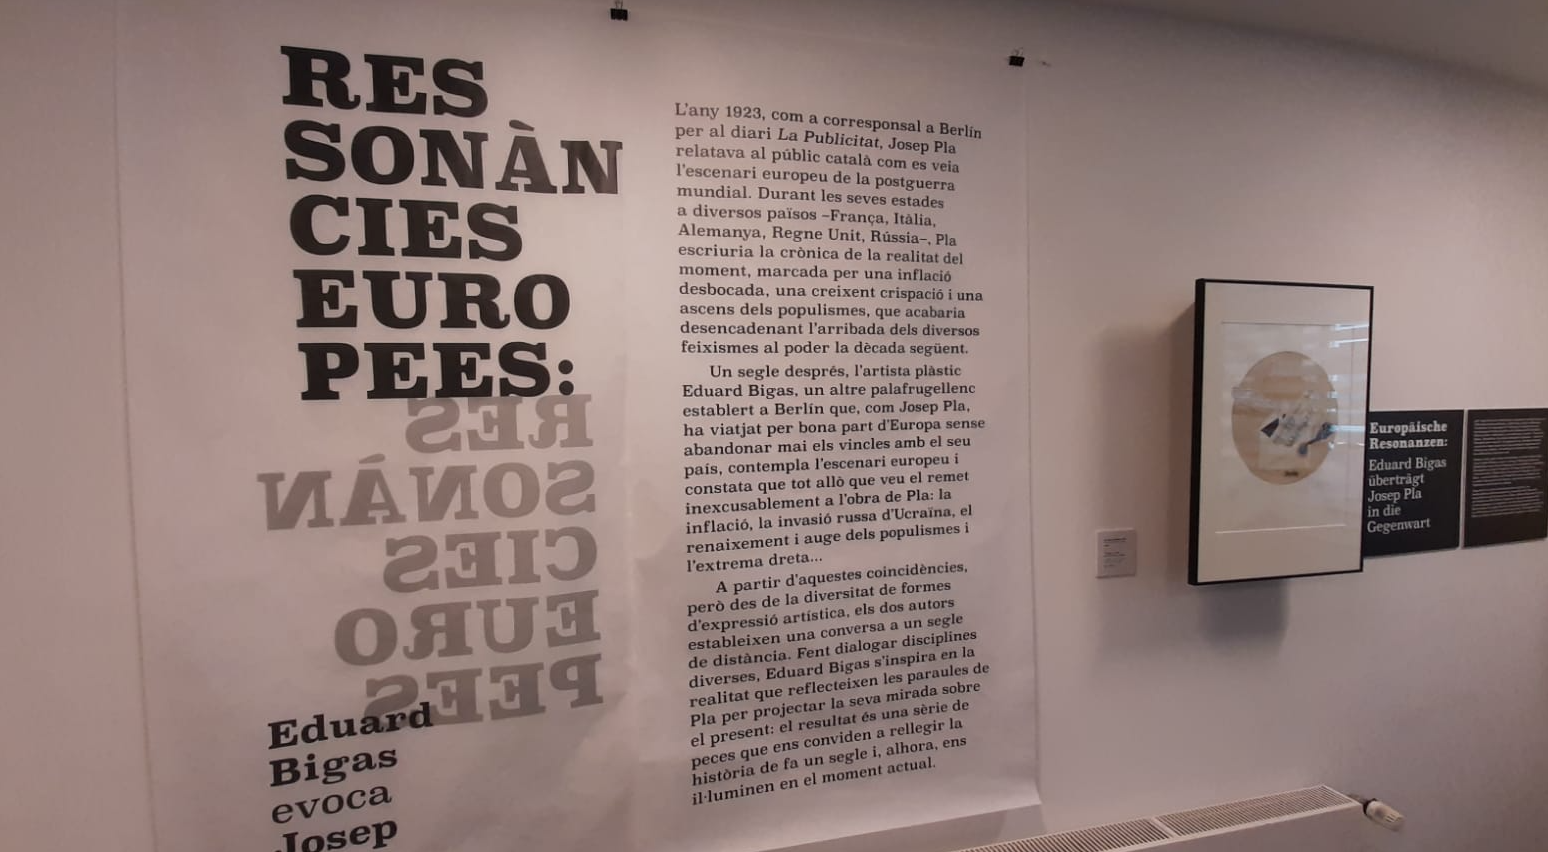 \'Ressonàncies europees: Eduard Bigas evoca Josep Pla\' arriba a Berlín